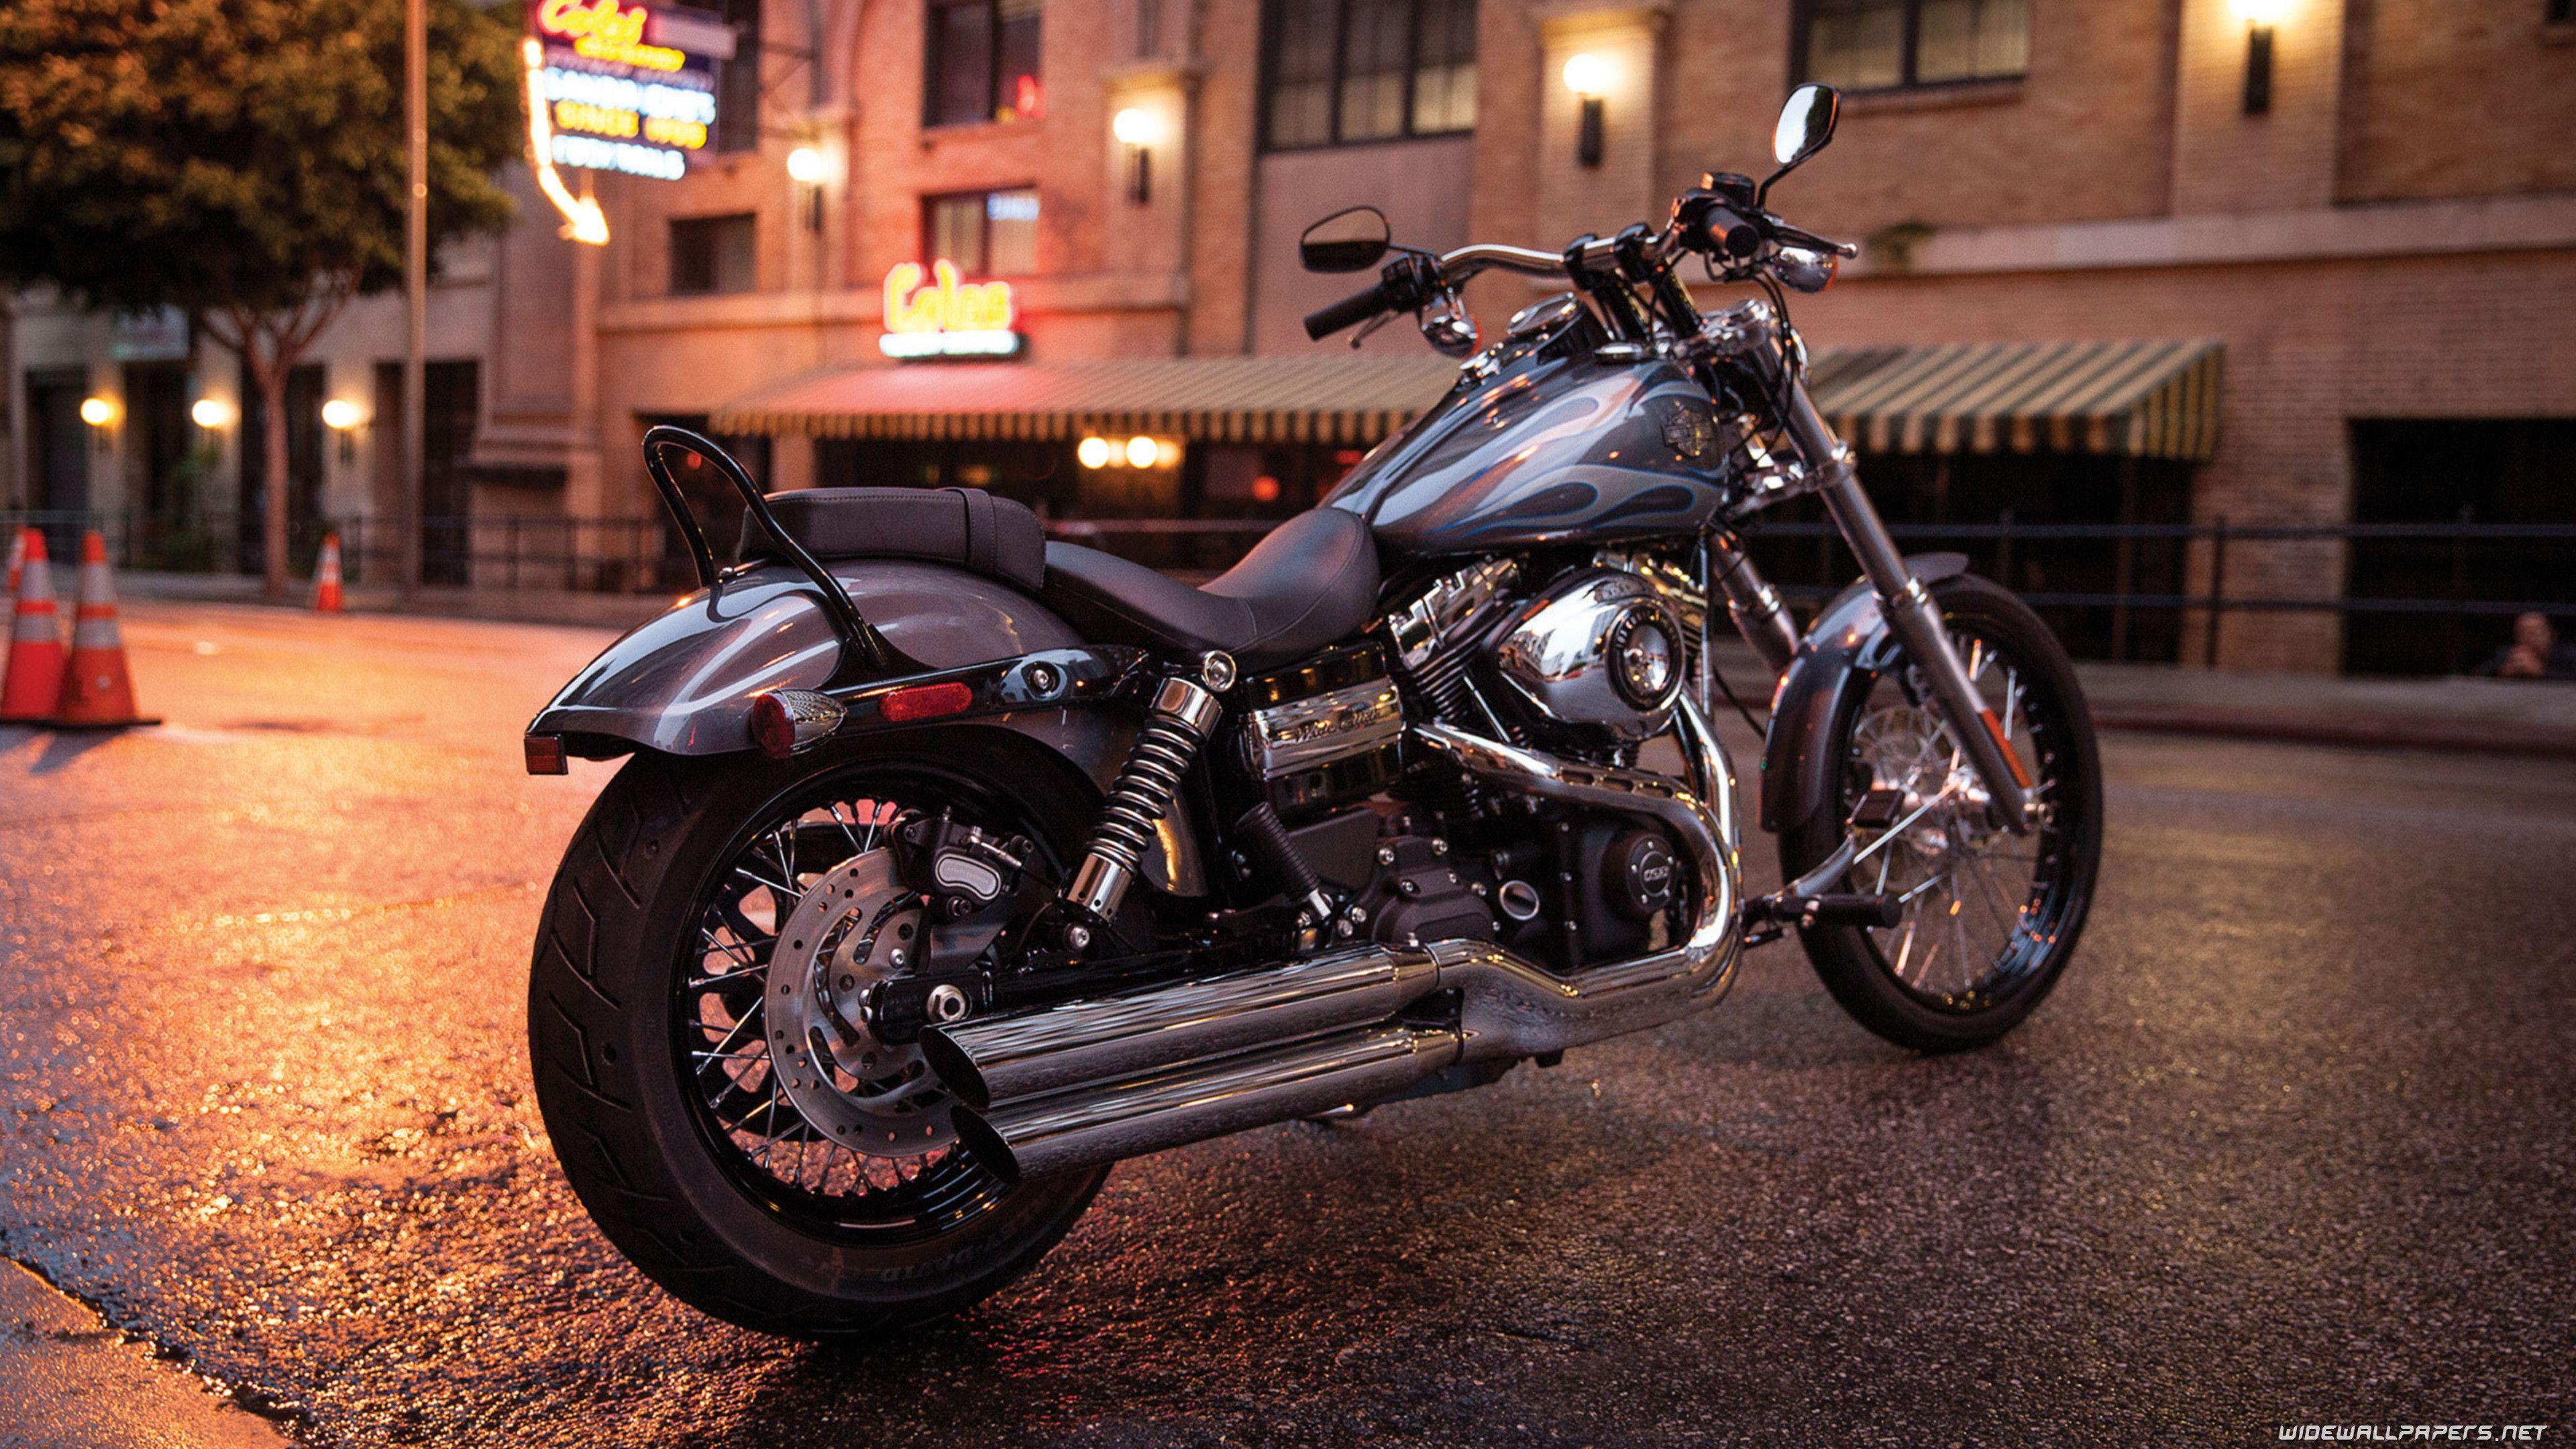 Harley Davidson K Wallpapers Top Free Harley Davidson K Backgrounds